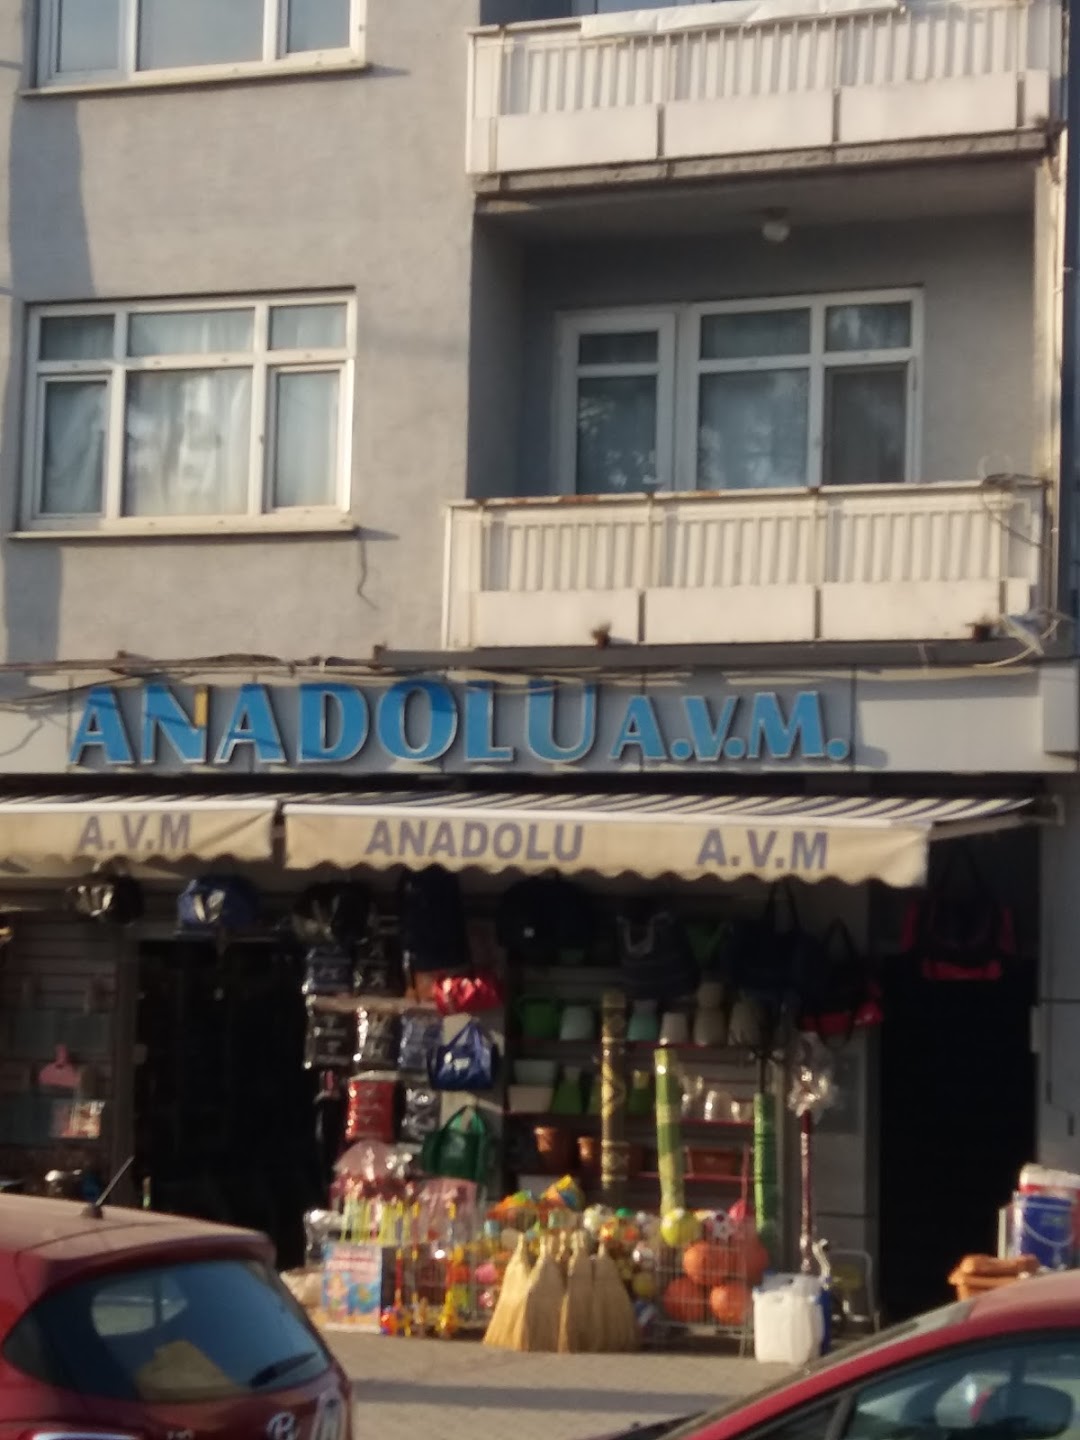 Anadolu A.V.M.